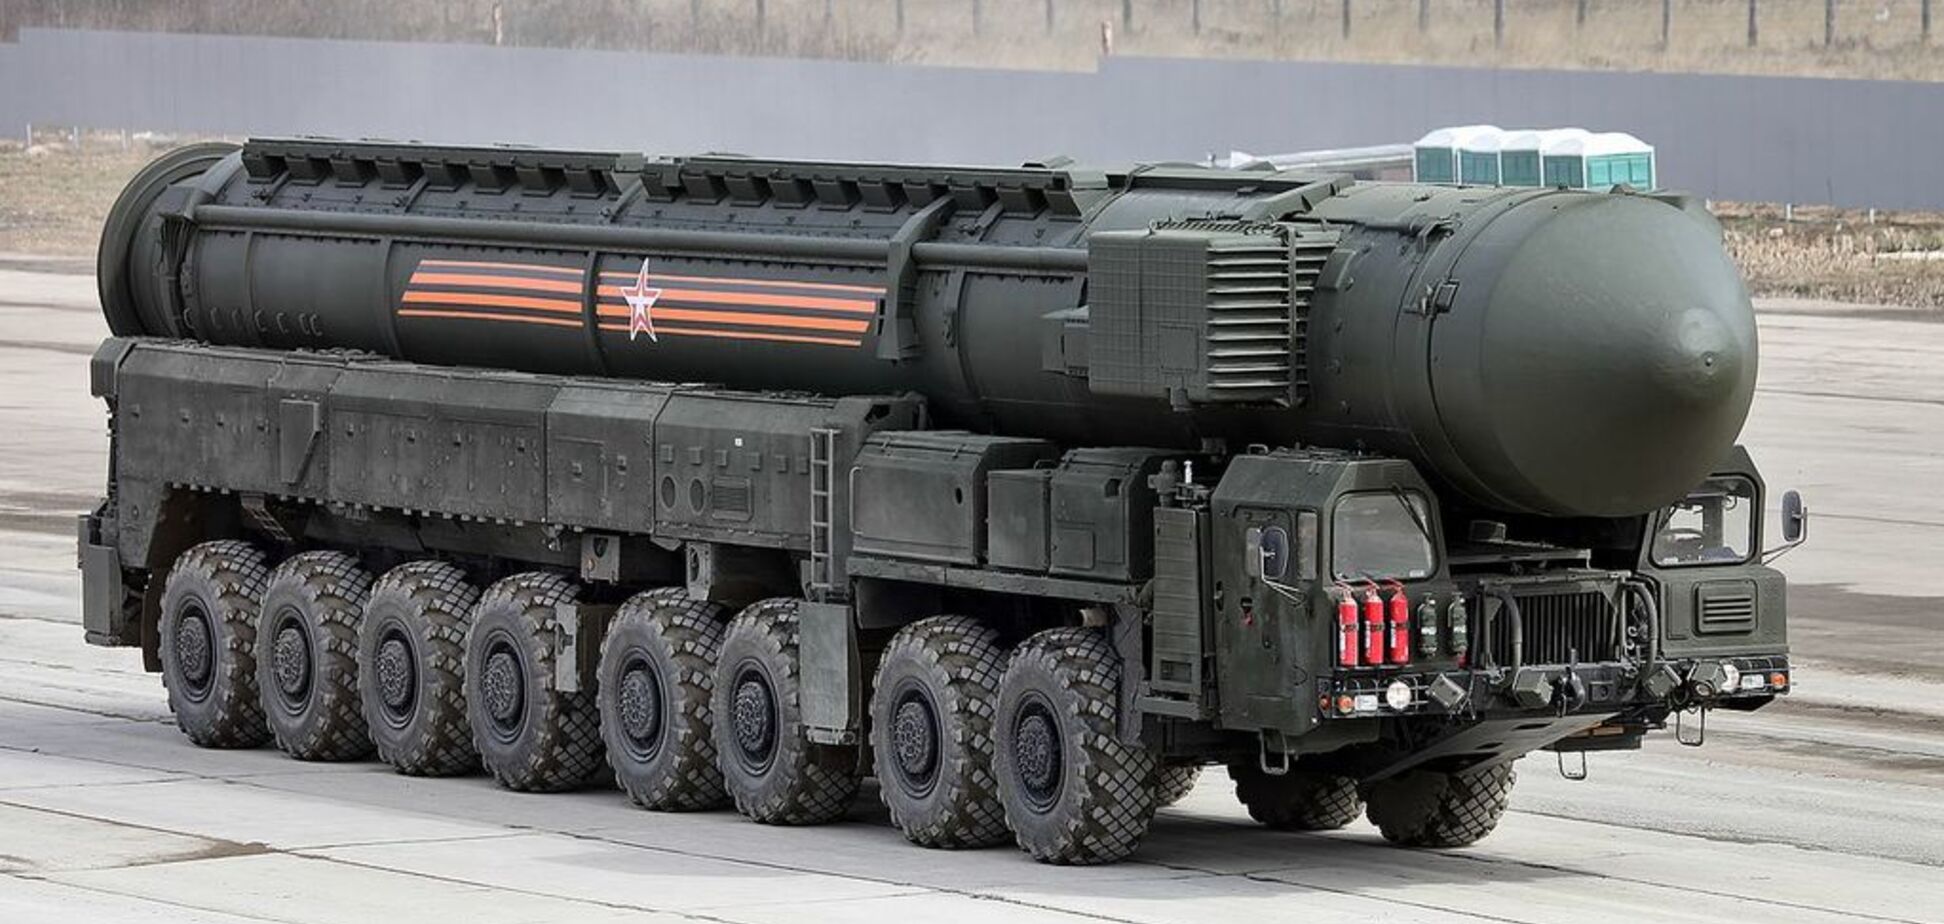 Поблизу Москви зняли грізну колону секретних міжконтинентальних ракетних комплексів Путіна: фото і відеофакт